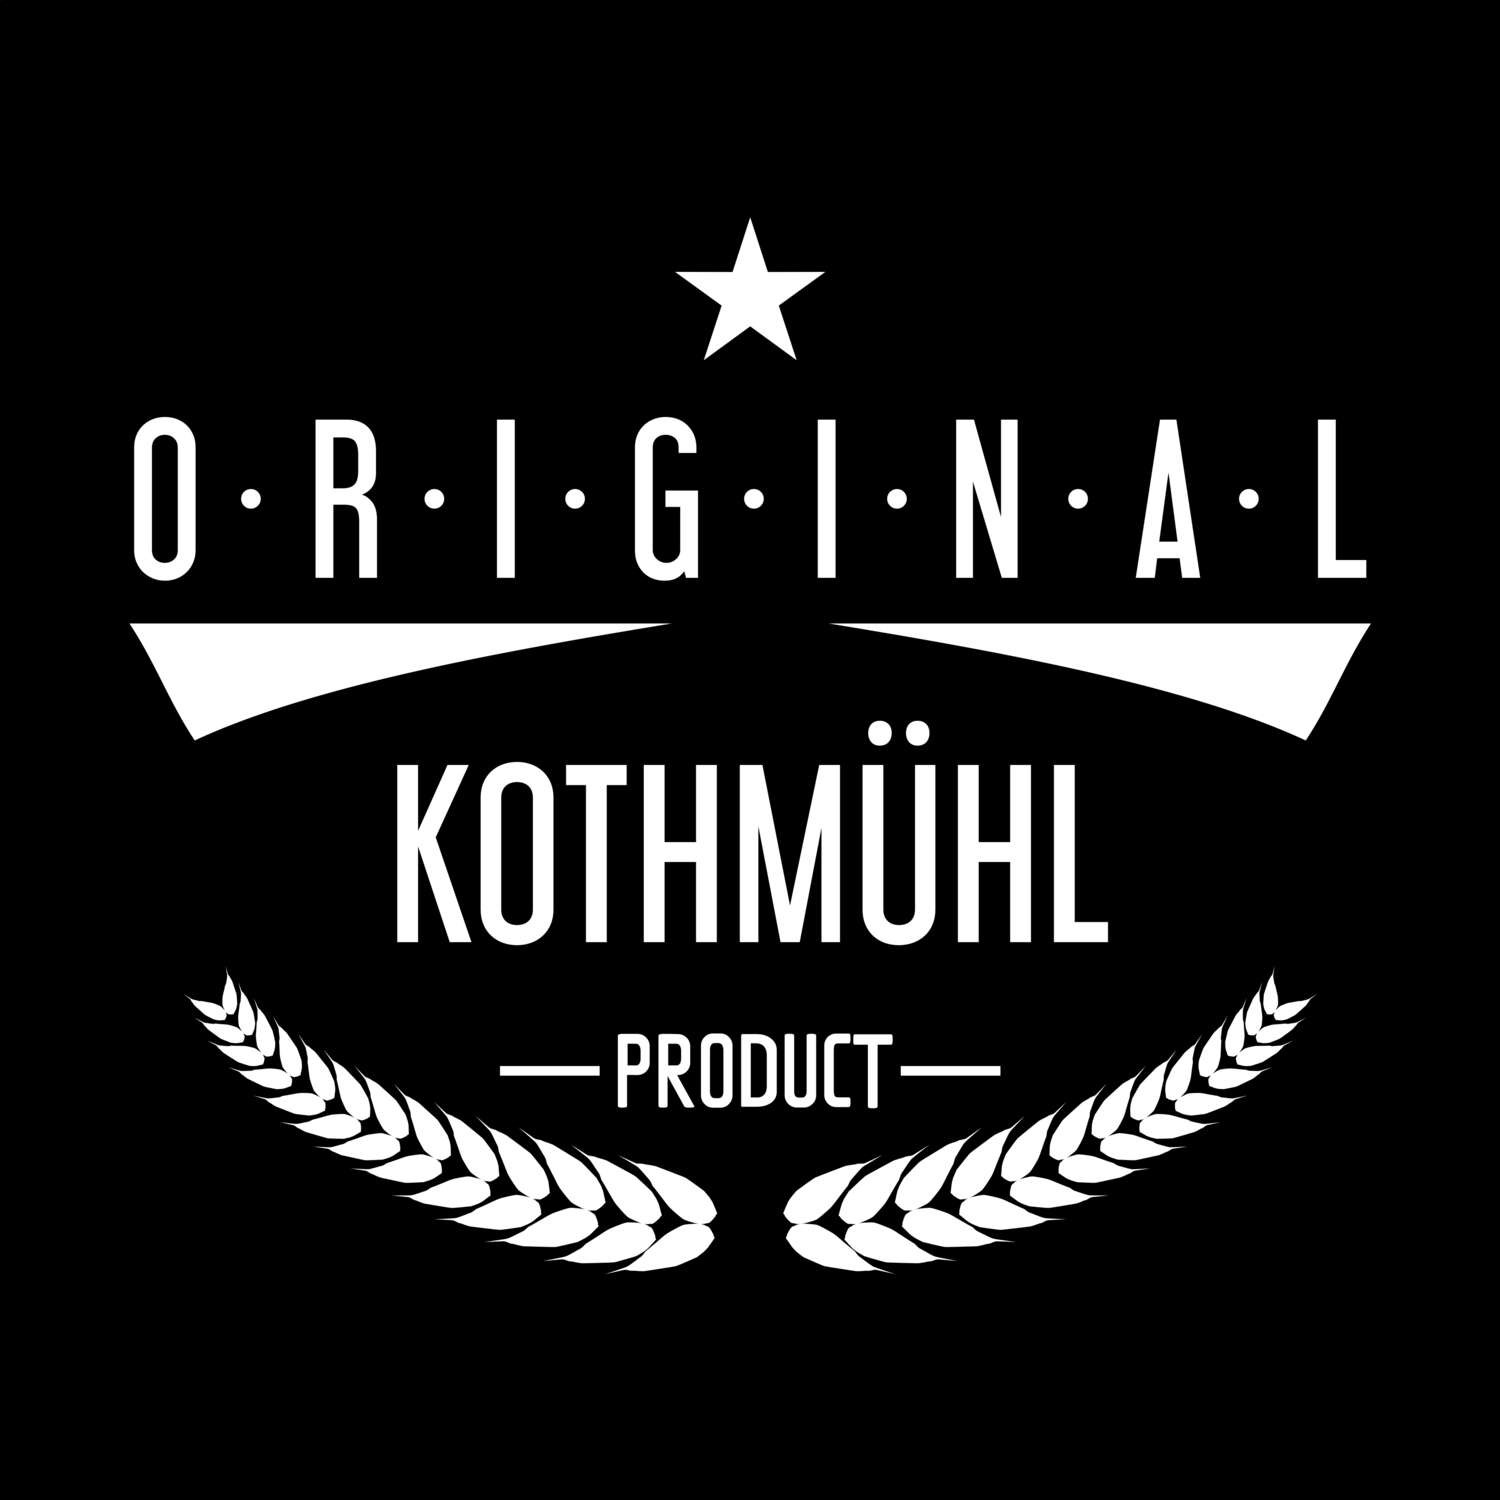 Kothmühl T-Shirt »Original Product«